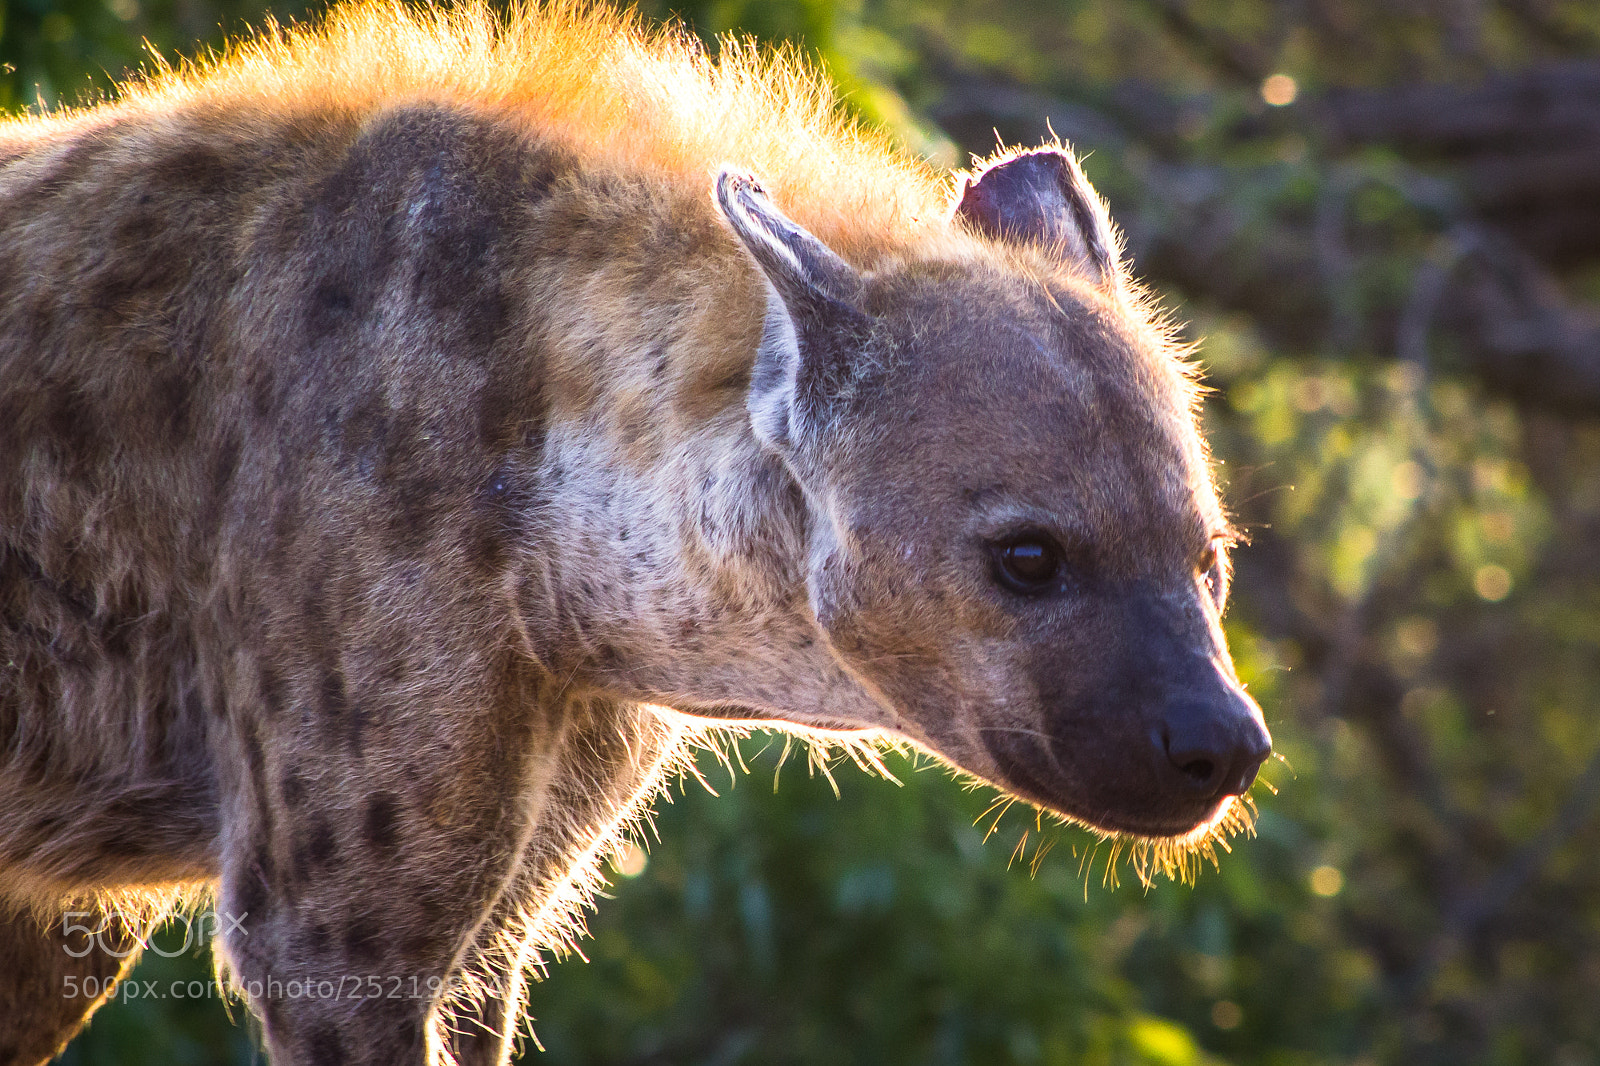 Canon EOS 60D sample photo. Morning hyena photography